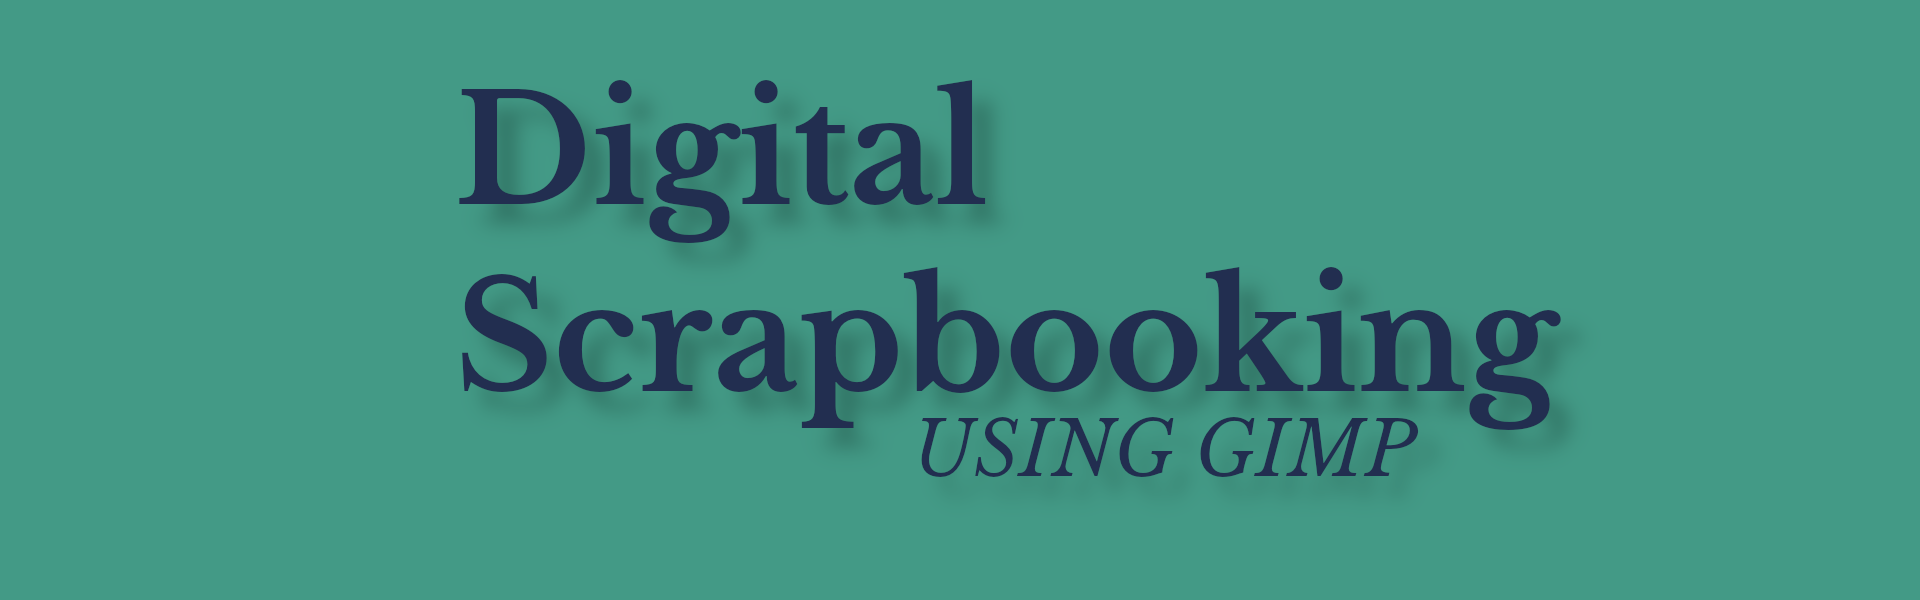 Digital Scrapbooking using GIMP